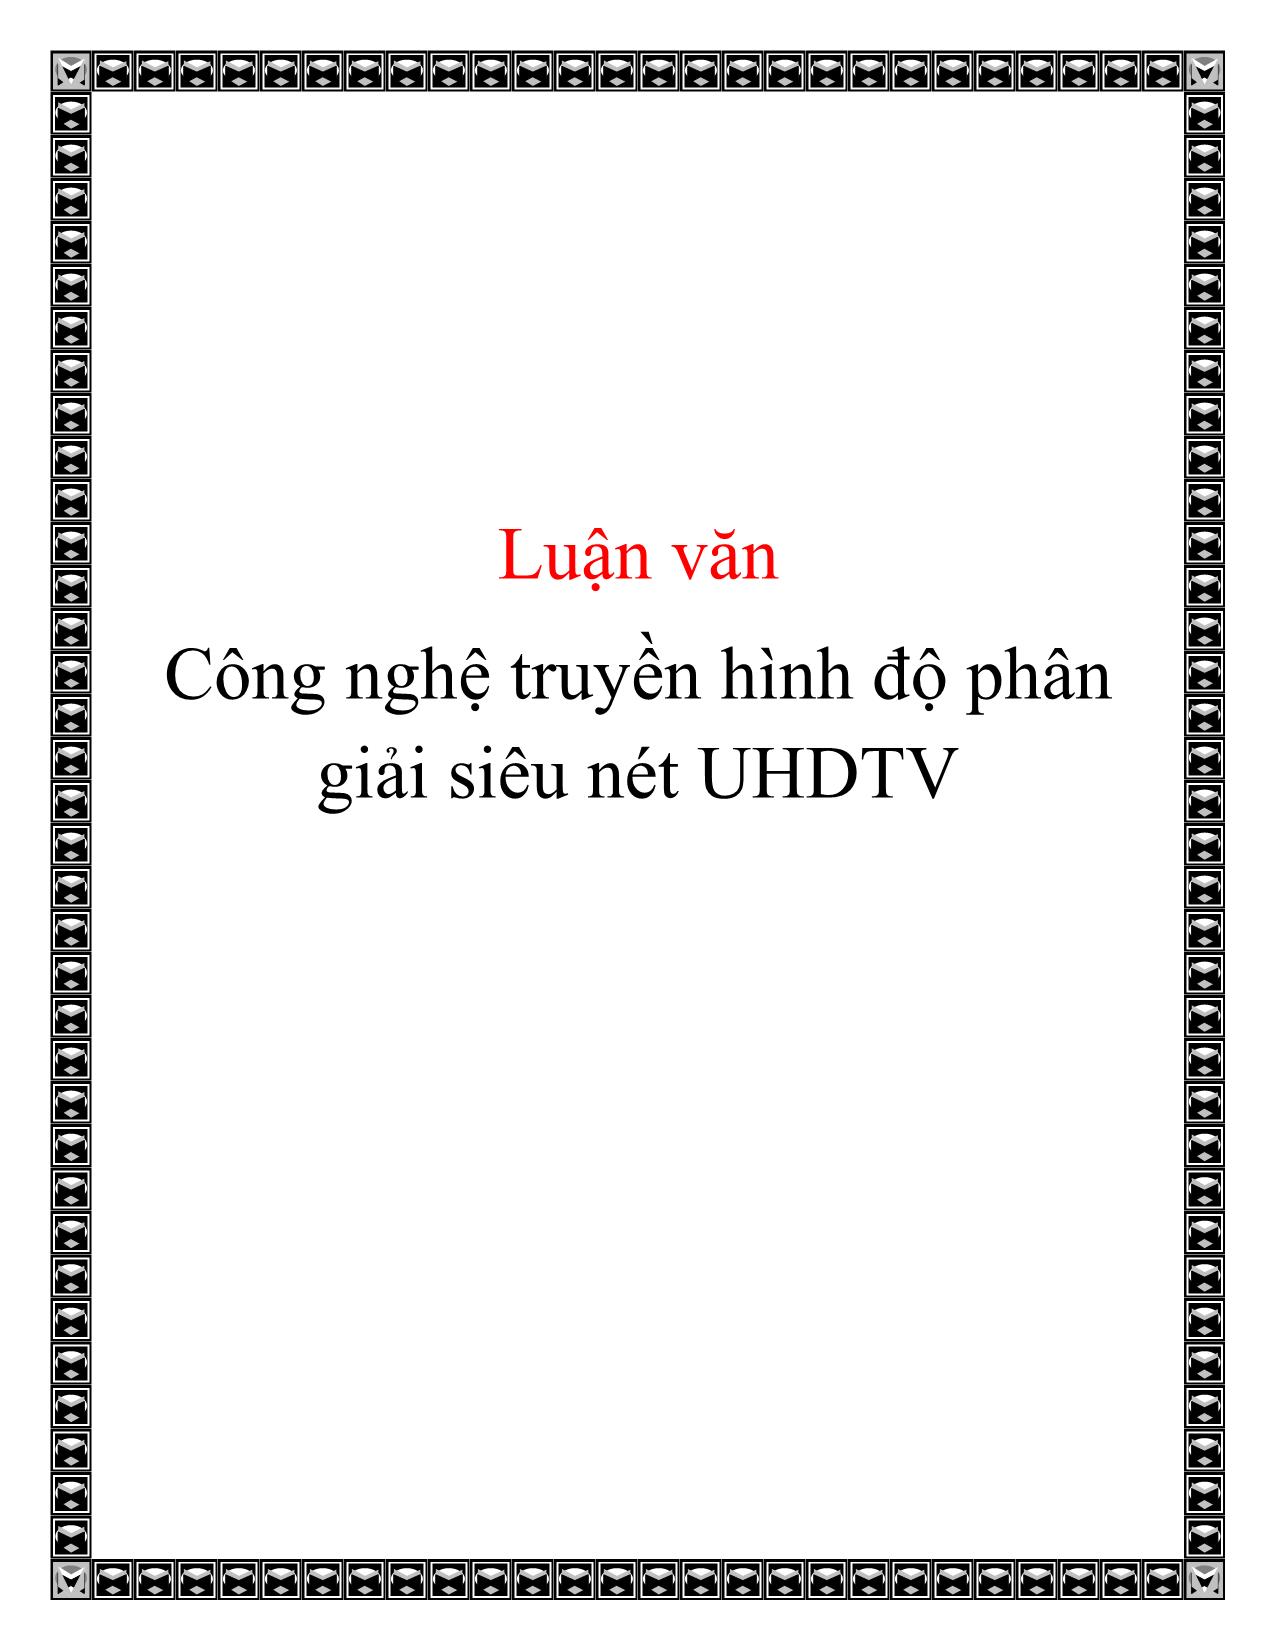 Luận văn Công nghệ truyền hình độ phân giải siêu nét UHDTV trang 1